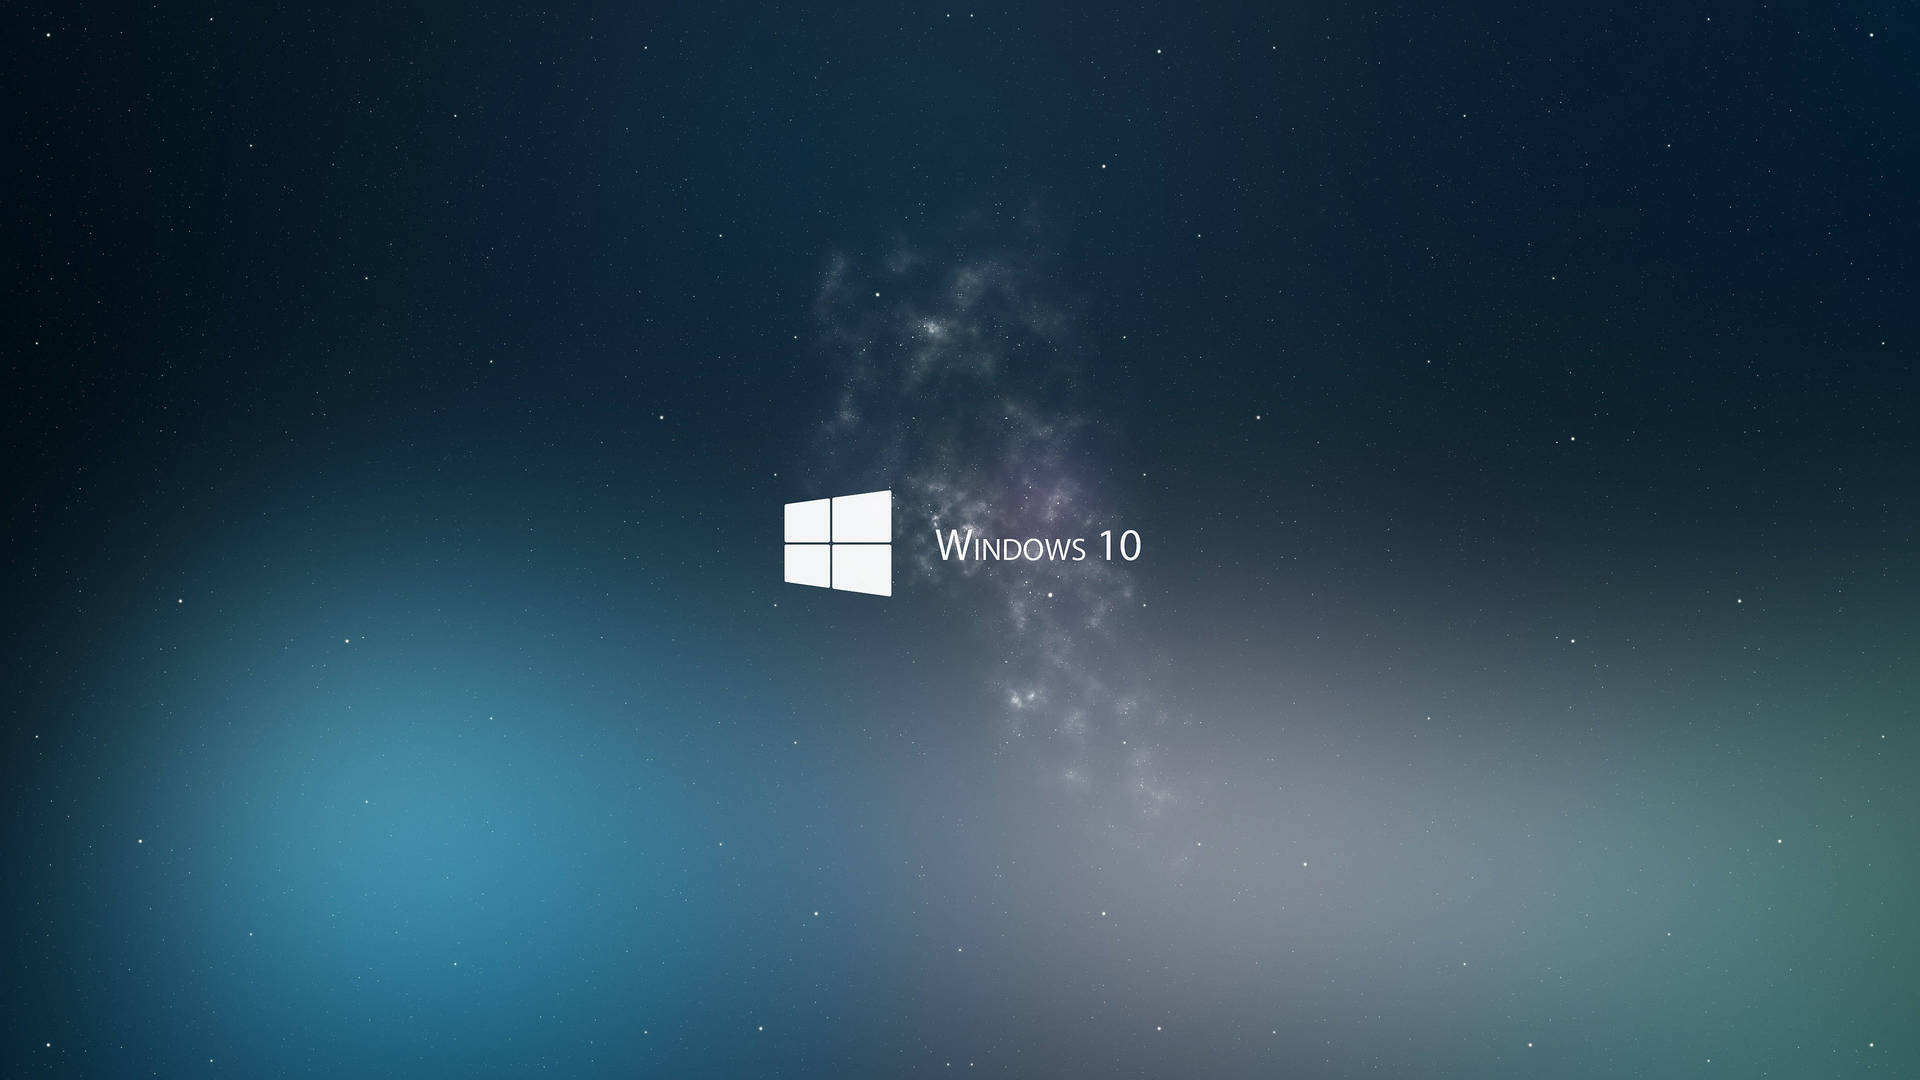 Starry Dark Windows 10 Background